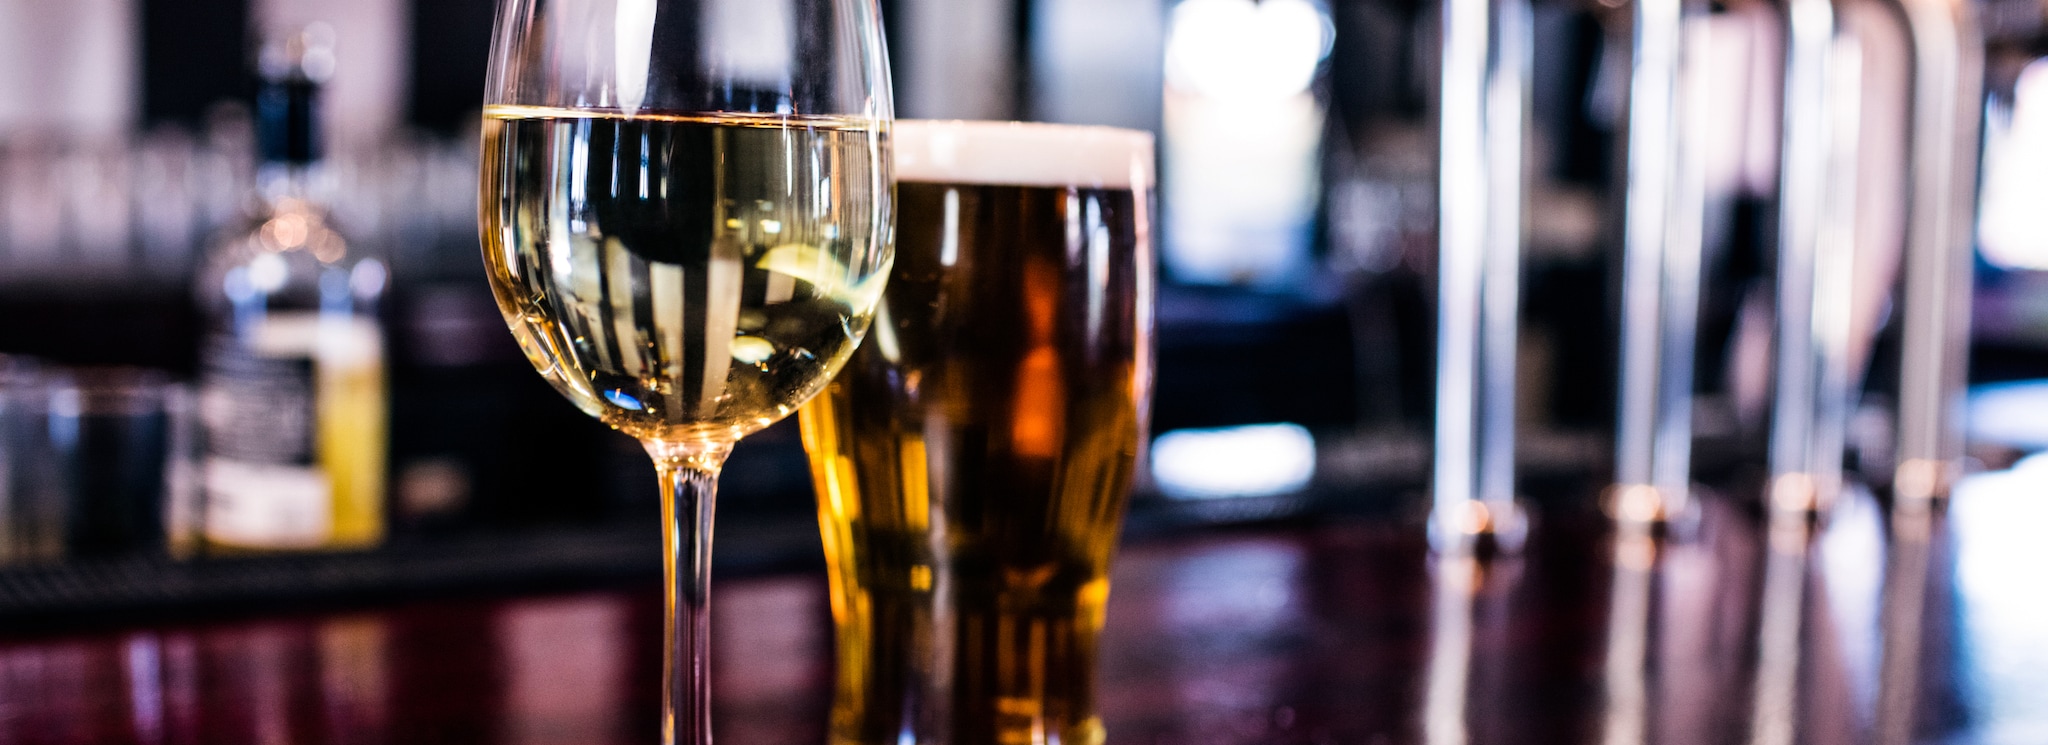 Pubs ingleses sofreram grandes perdas com a pandemia, com a população bebendo mais vinho e menos cerveja